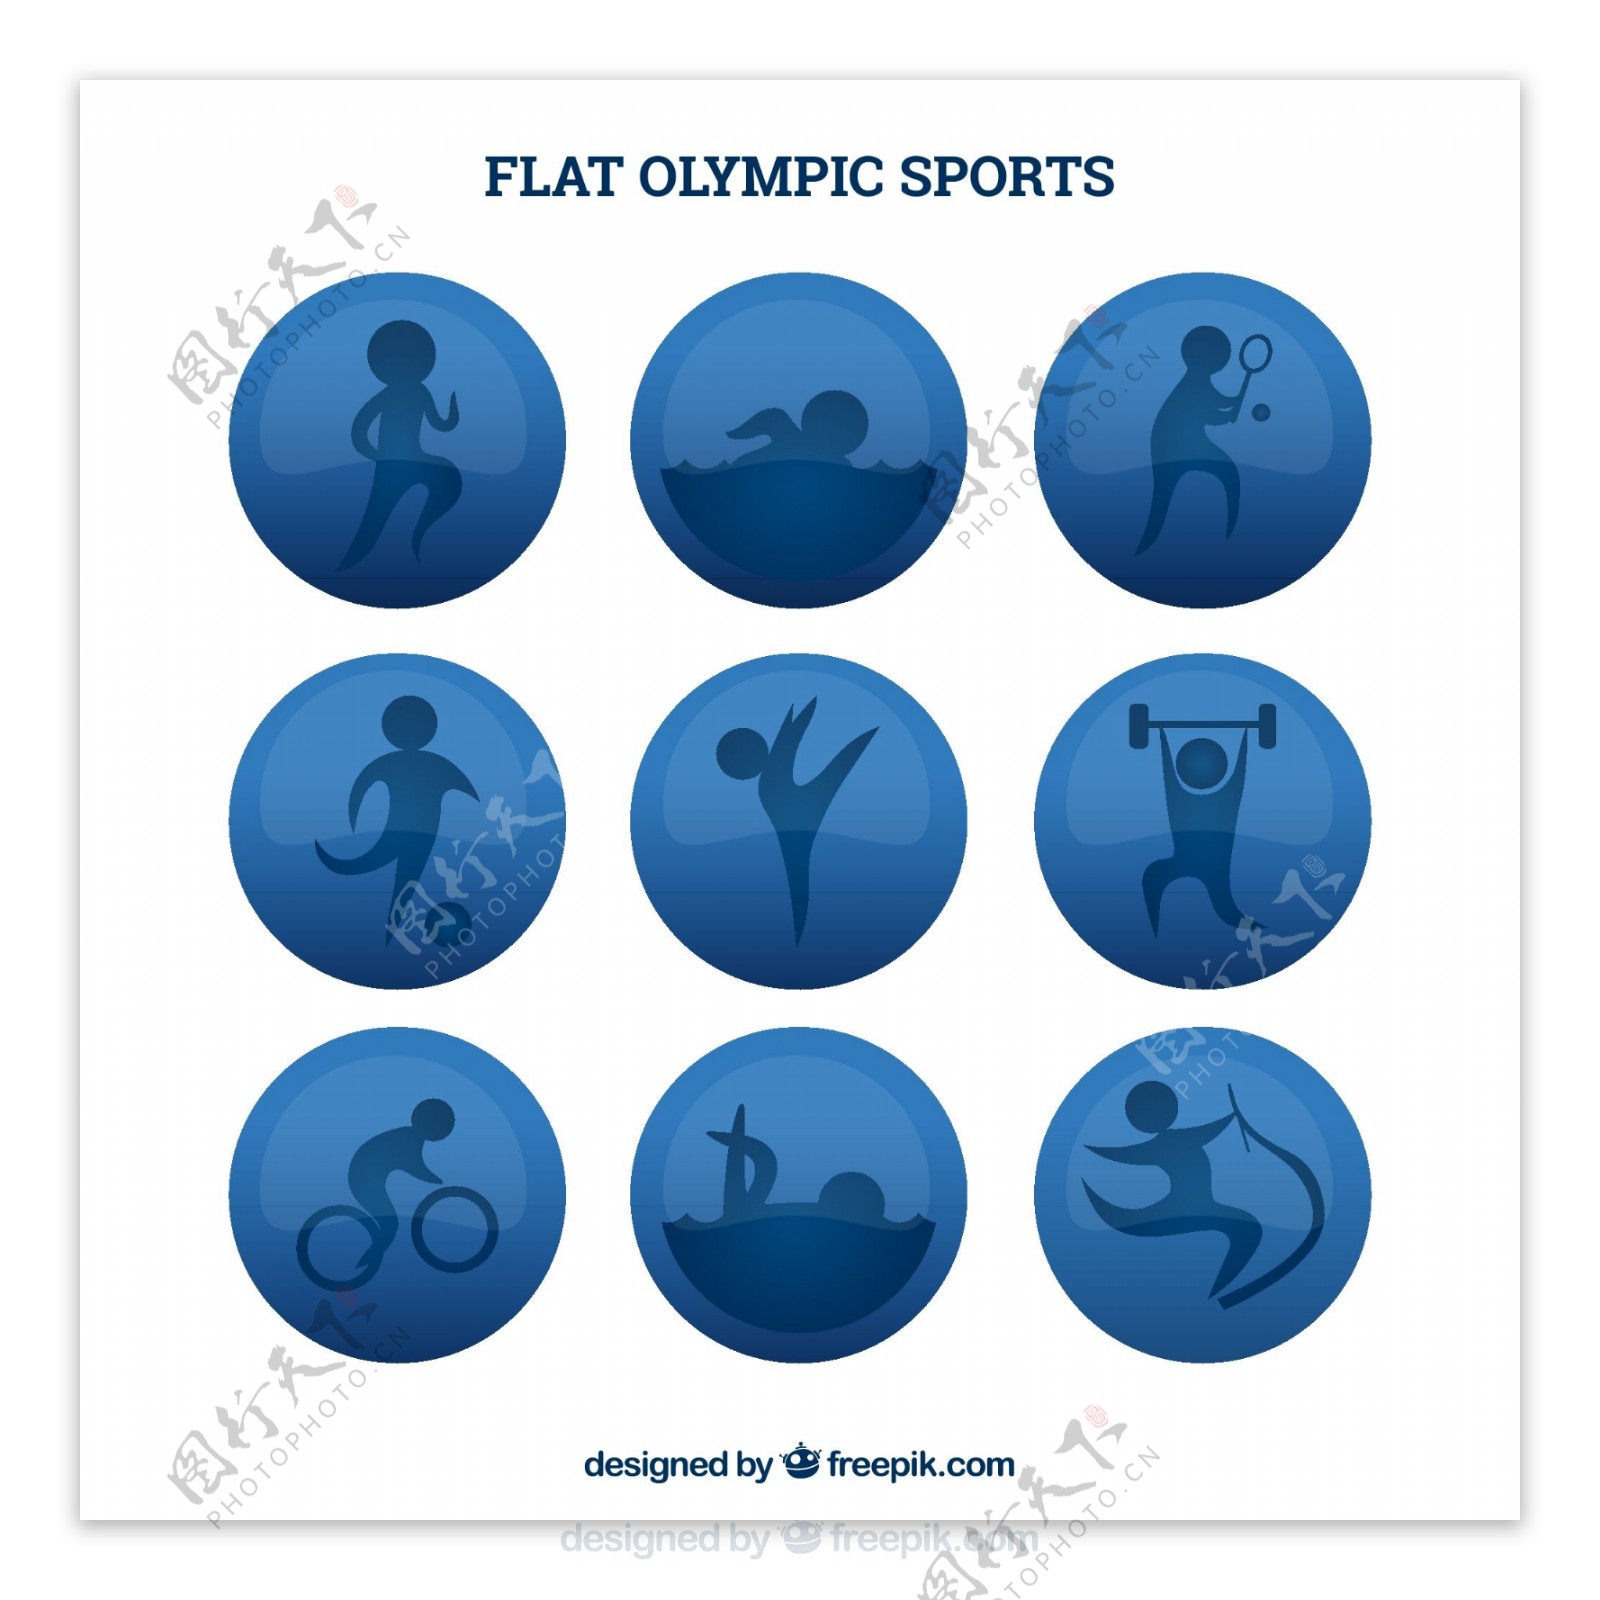 扁平奥林匹克运动徽章